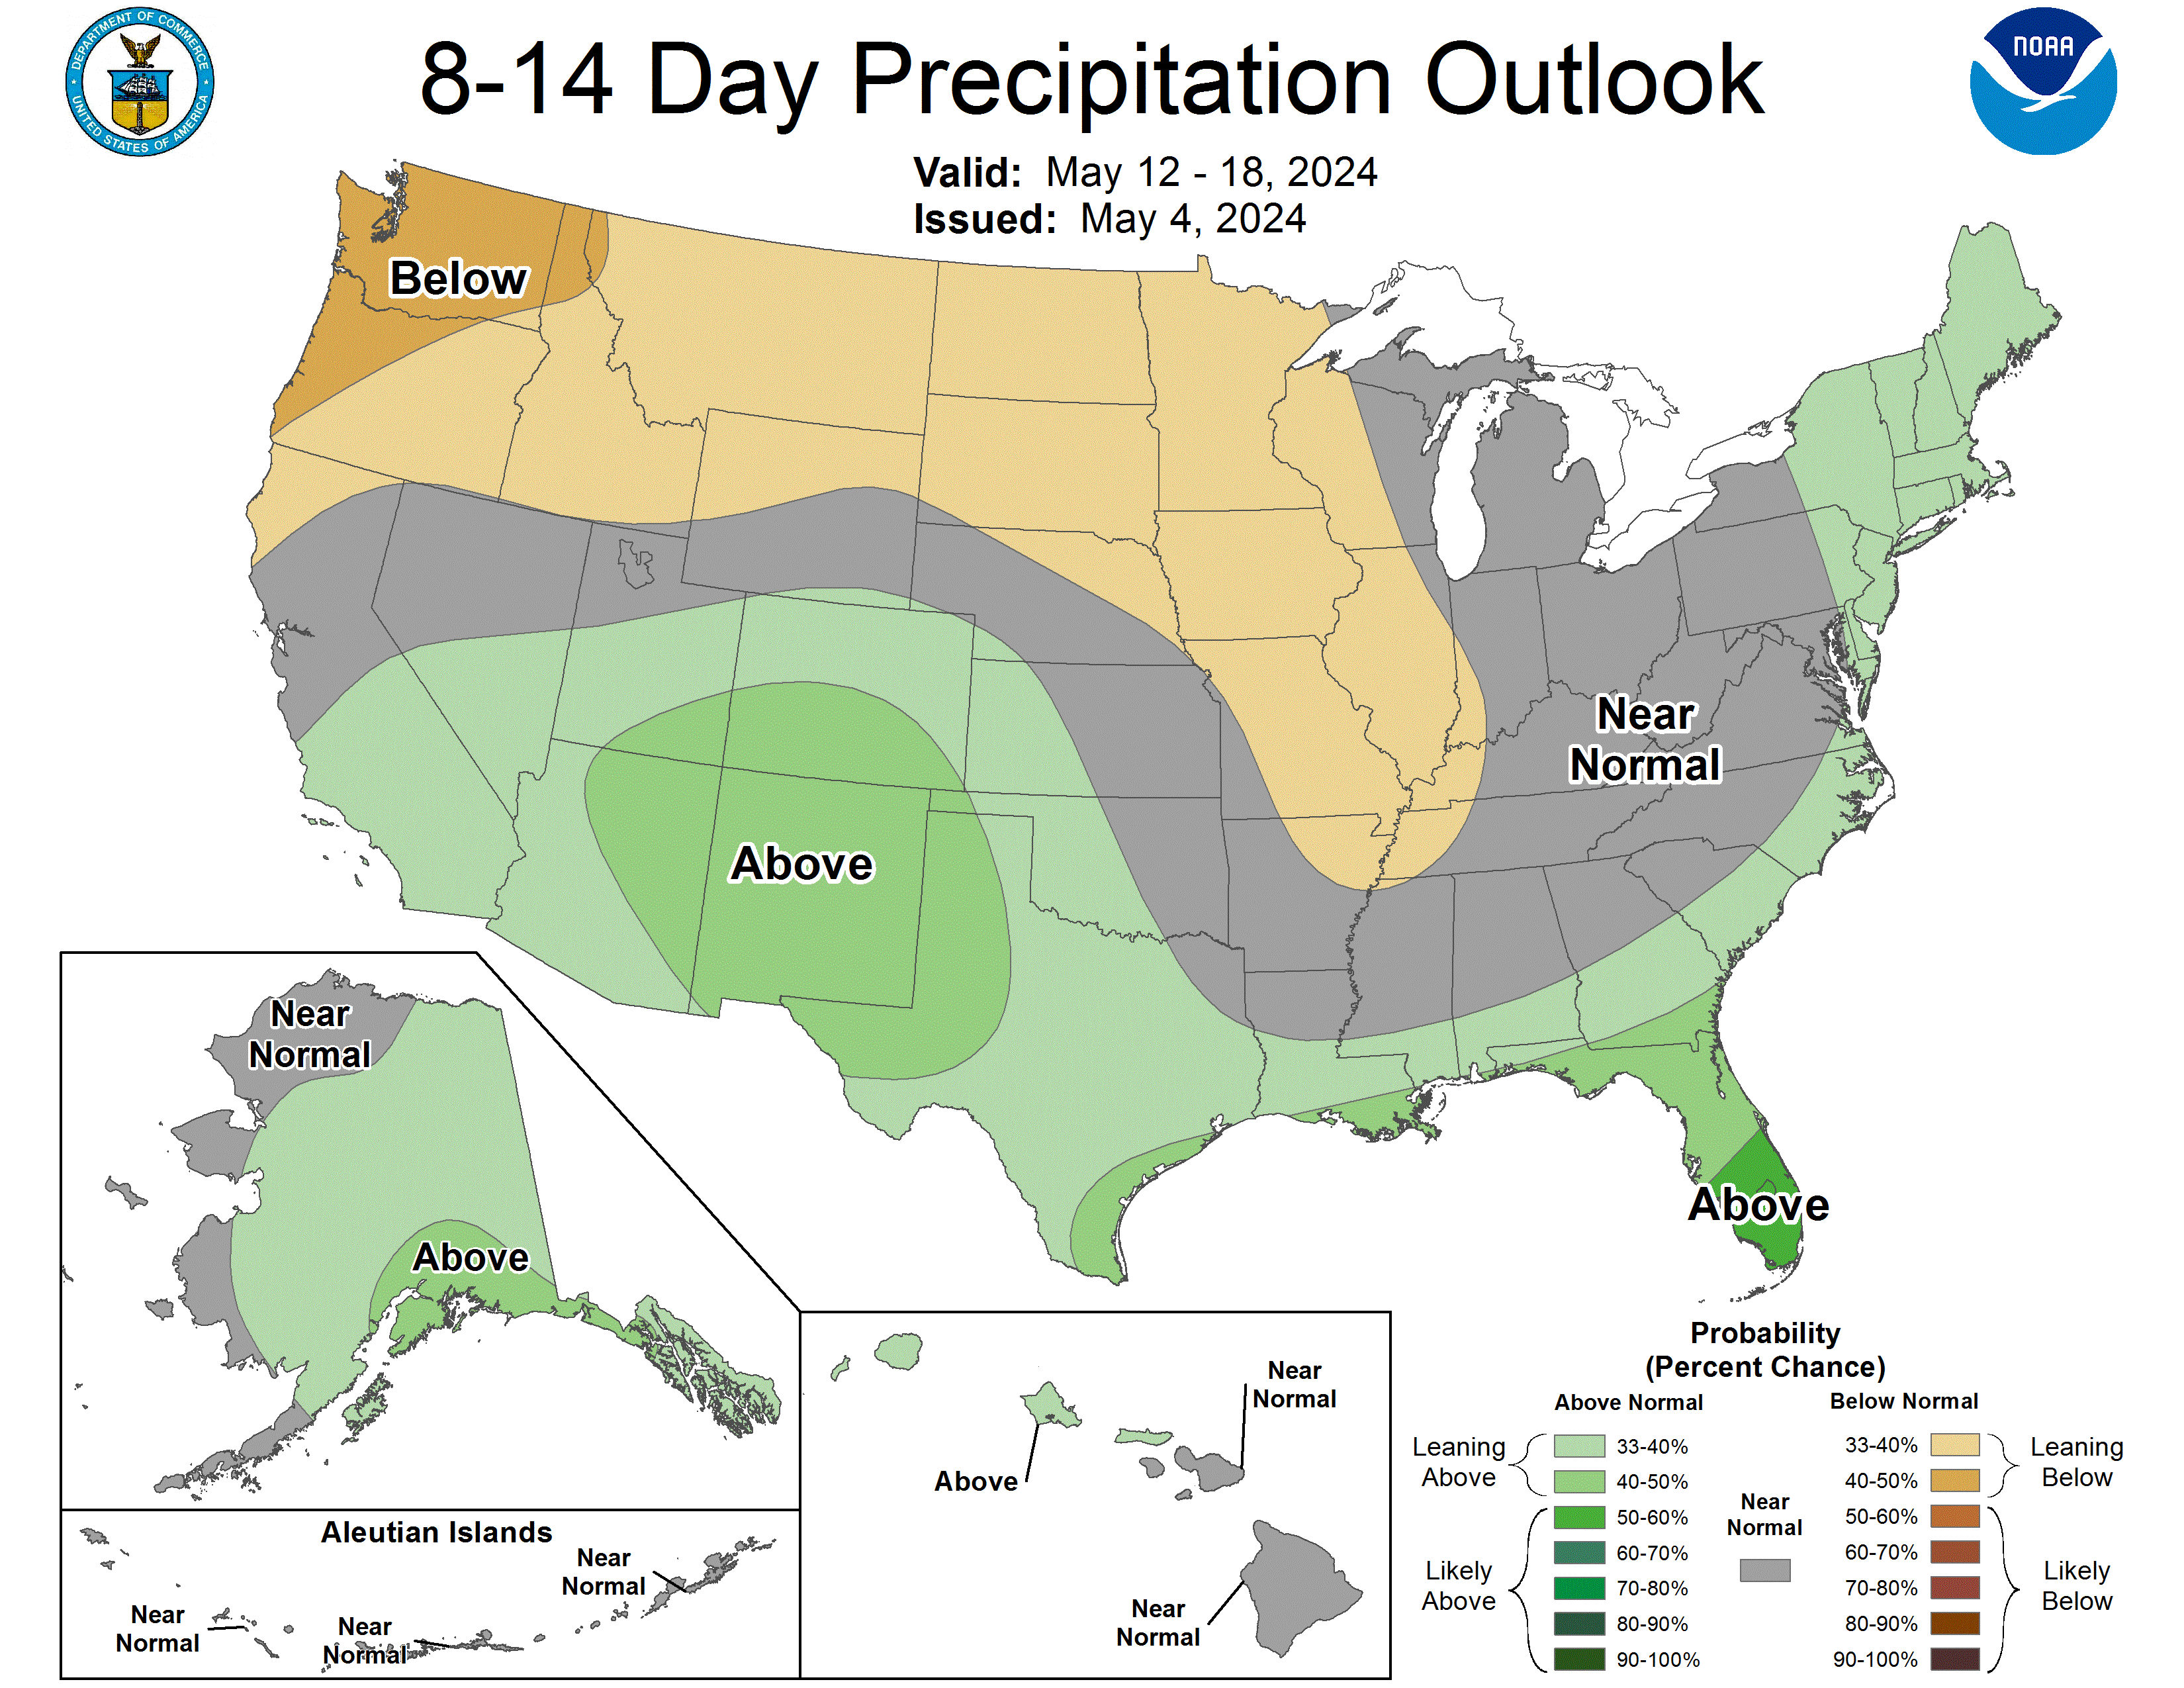 8-14 Day Precipitation Forecast